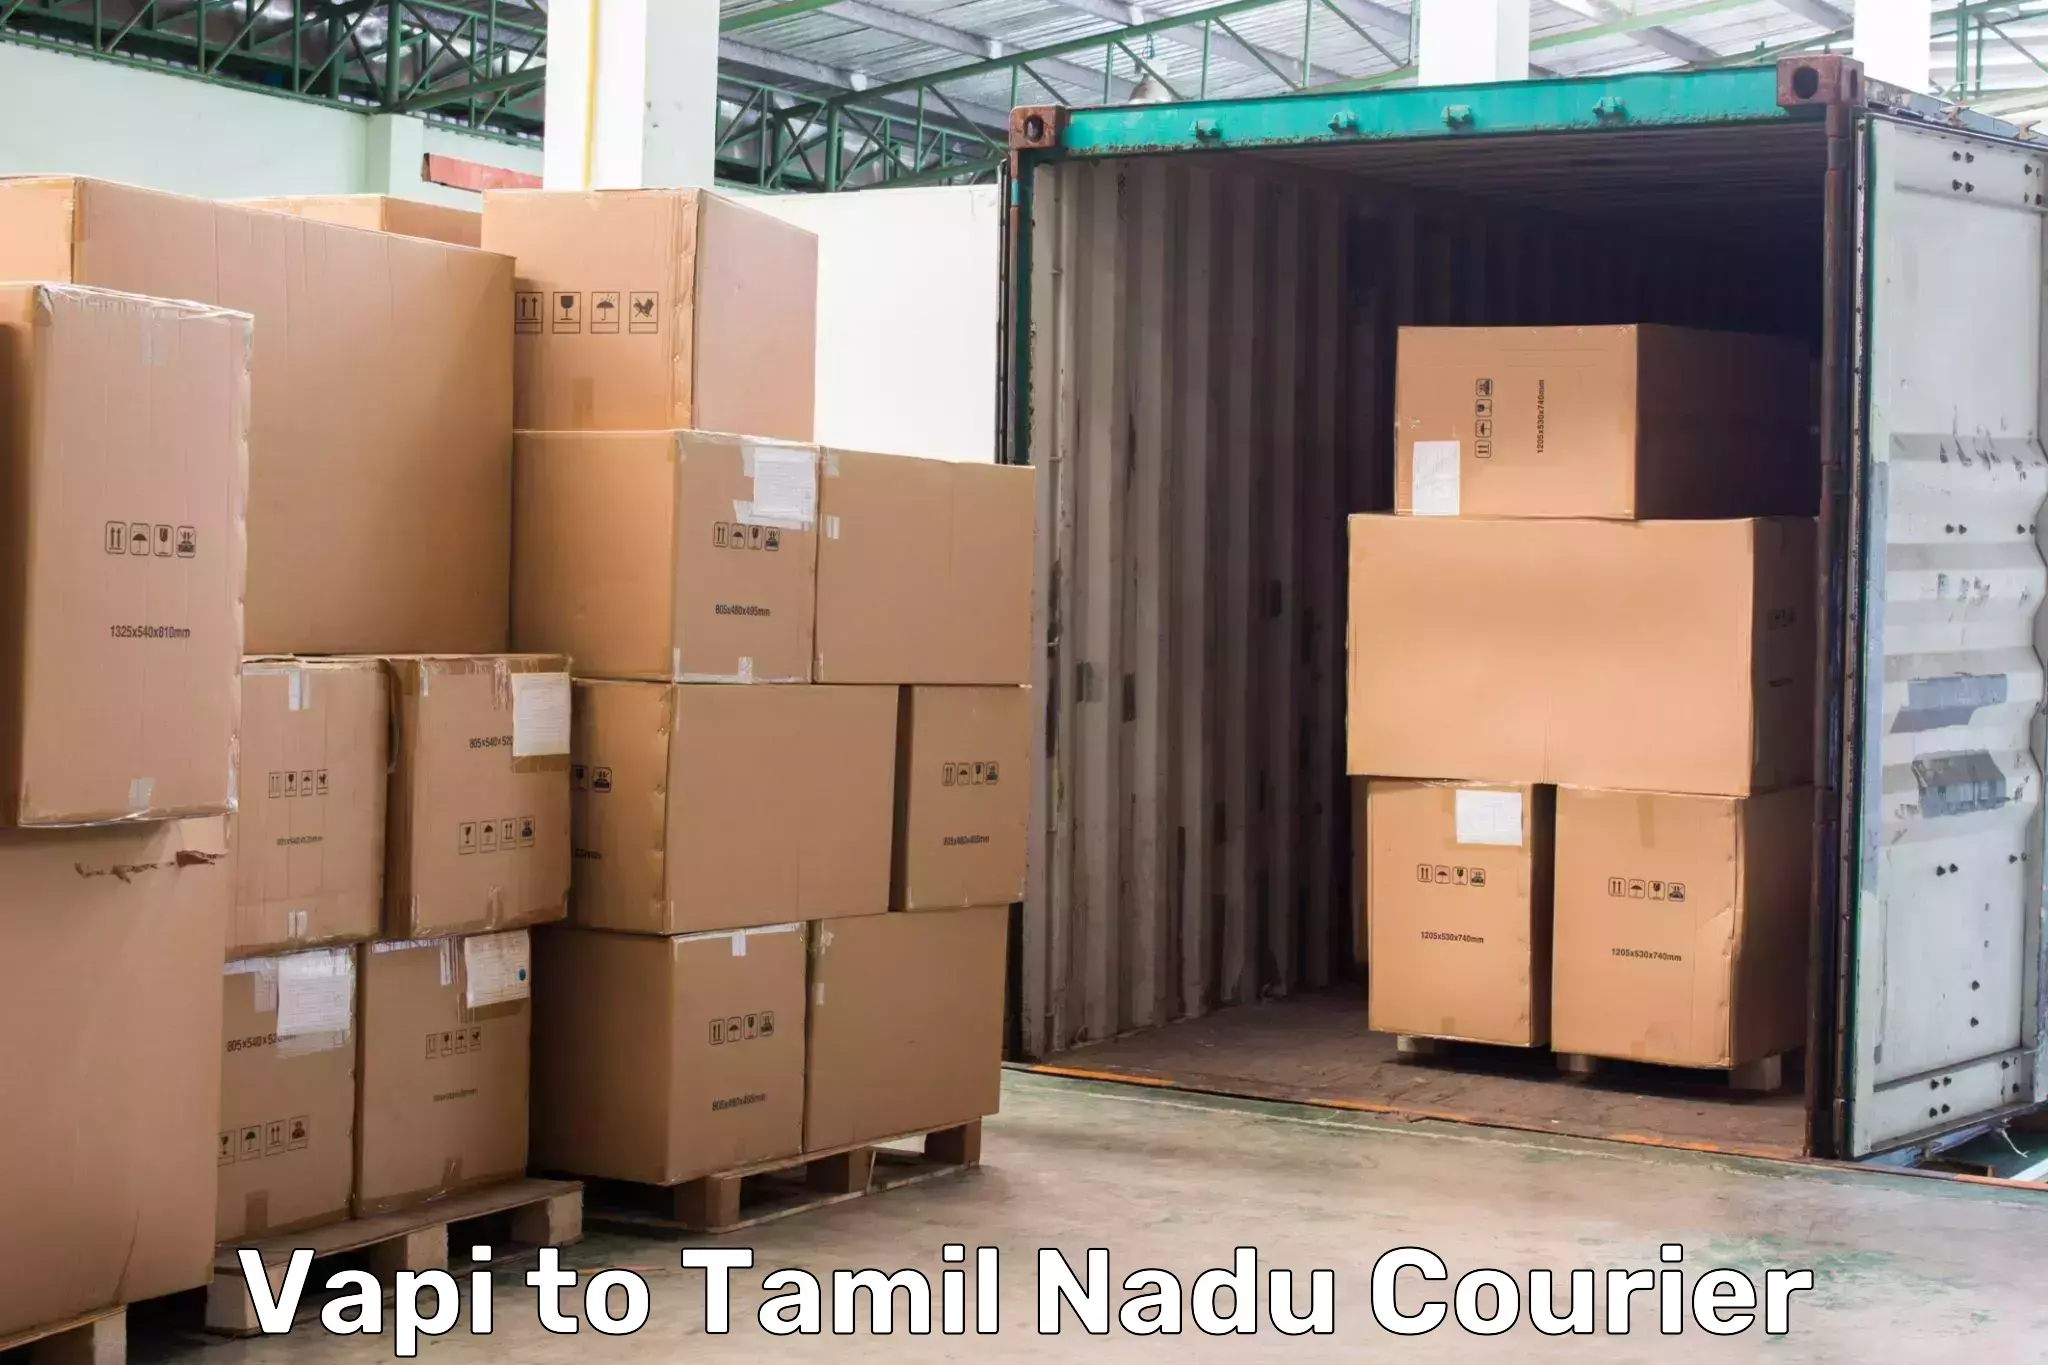 High-speed parcel service Vapi to Coonoor